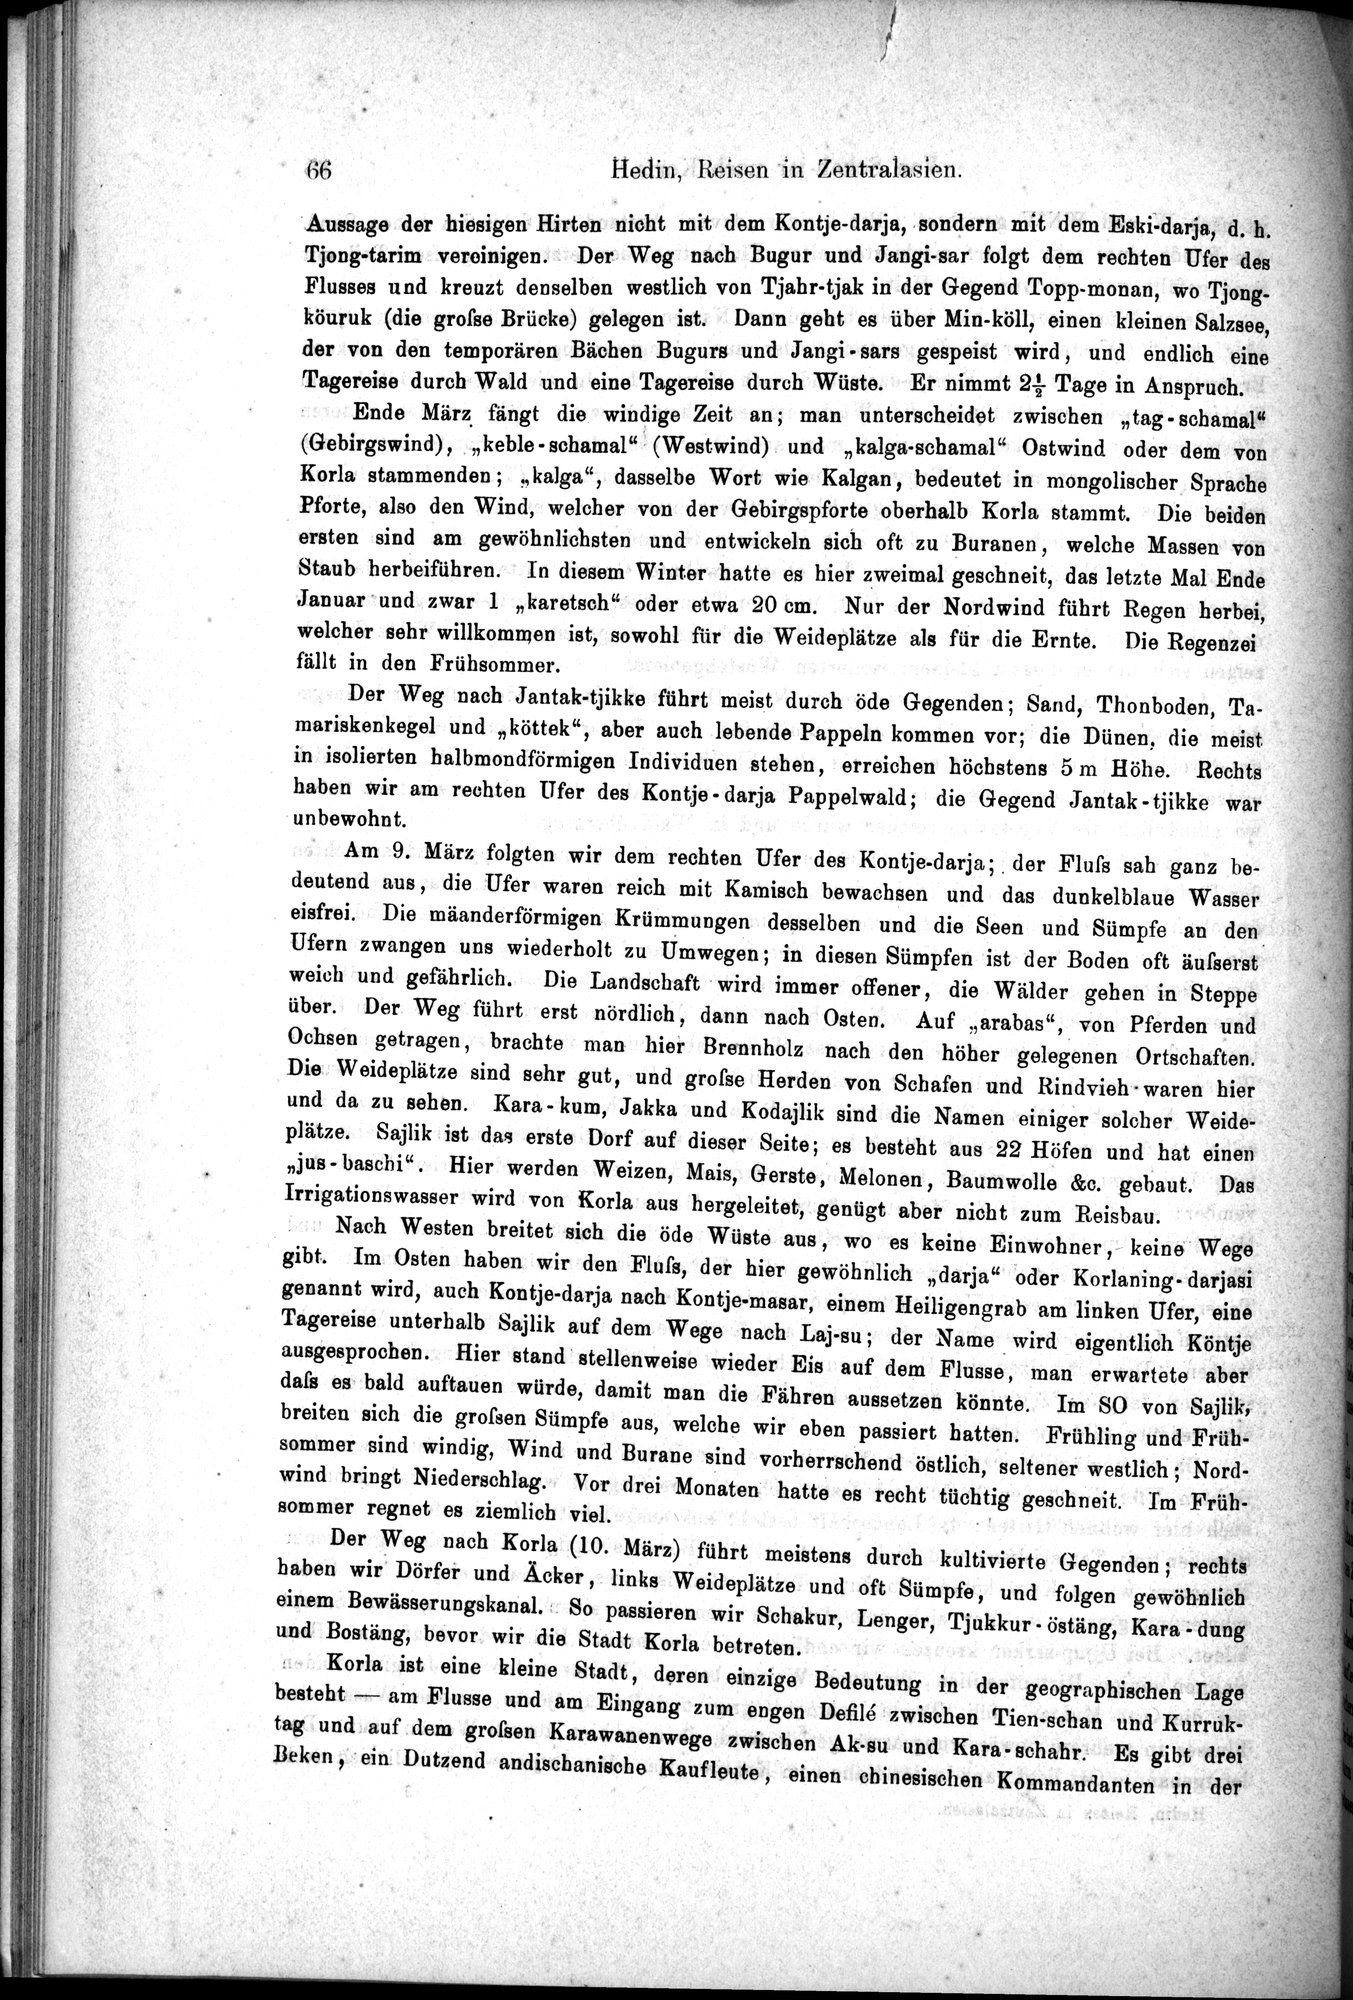 Die Geographische-Wissenschaftlichen Ergebnisse meiner Reisen in Zentralasien, 1894-1897 : vol.1 / Page 78 (Grayscale High Resolution Image)